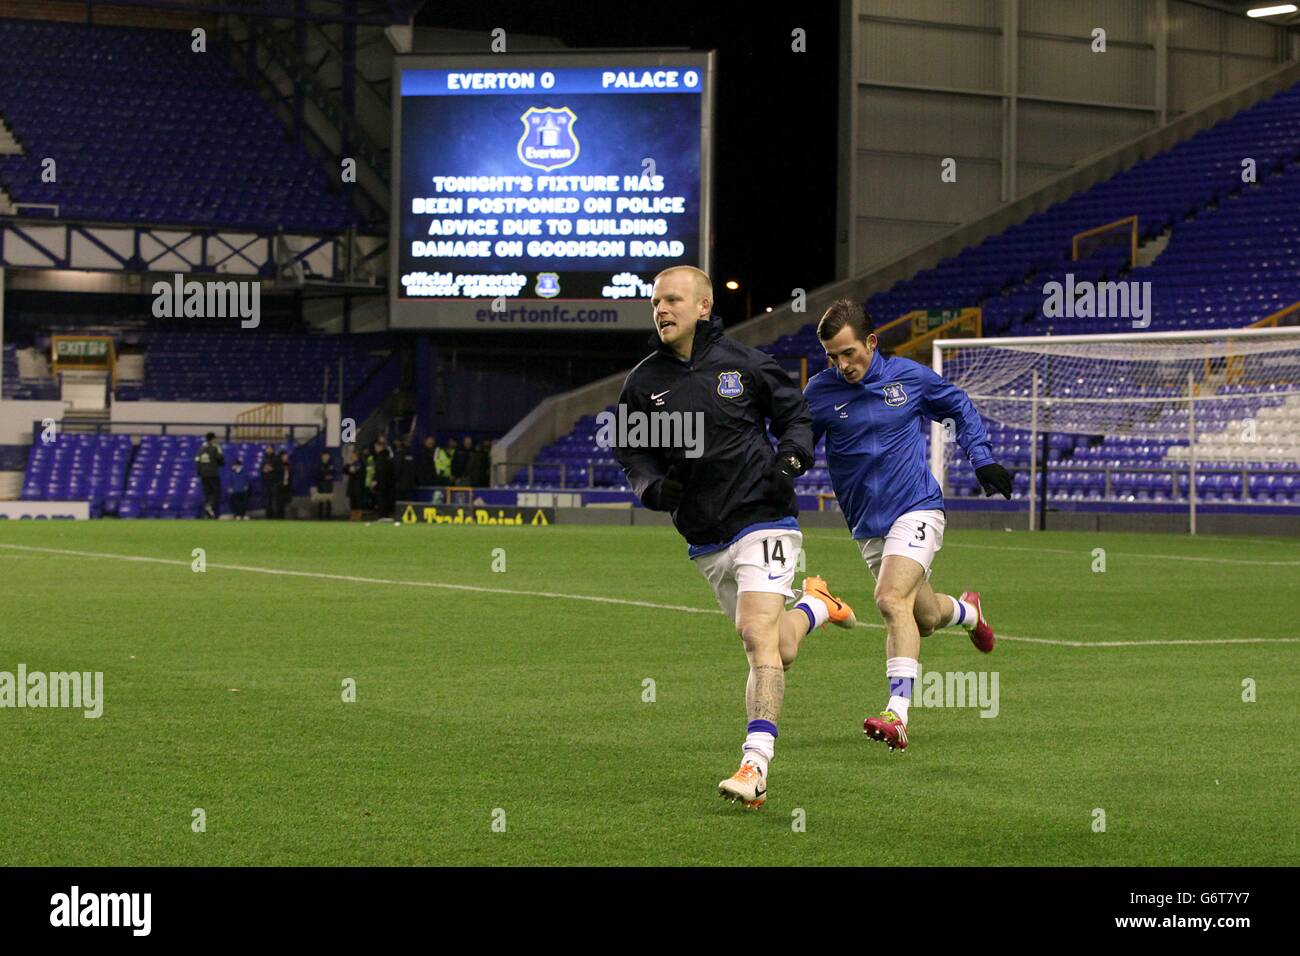 Steven Naismith von Everton und Leighton Baines (rechts) wärmen sich vor dem riesigen Videobildschirm auf und informieren die Fans, dass das Spiel verschoben wurde Stockfoto